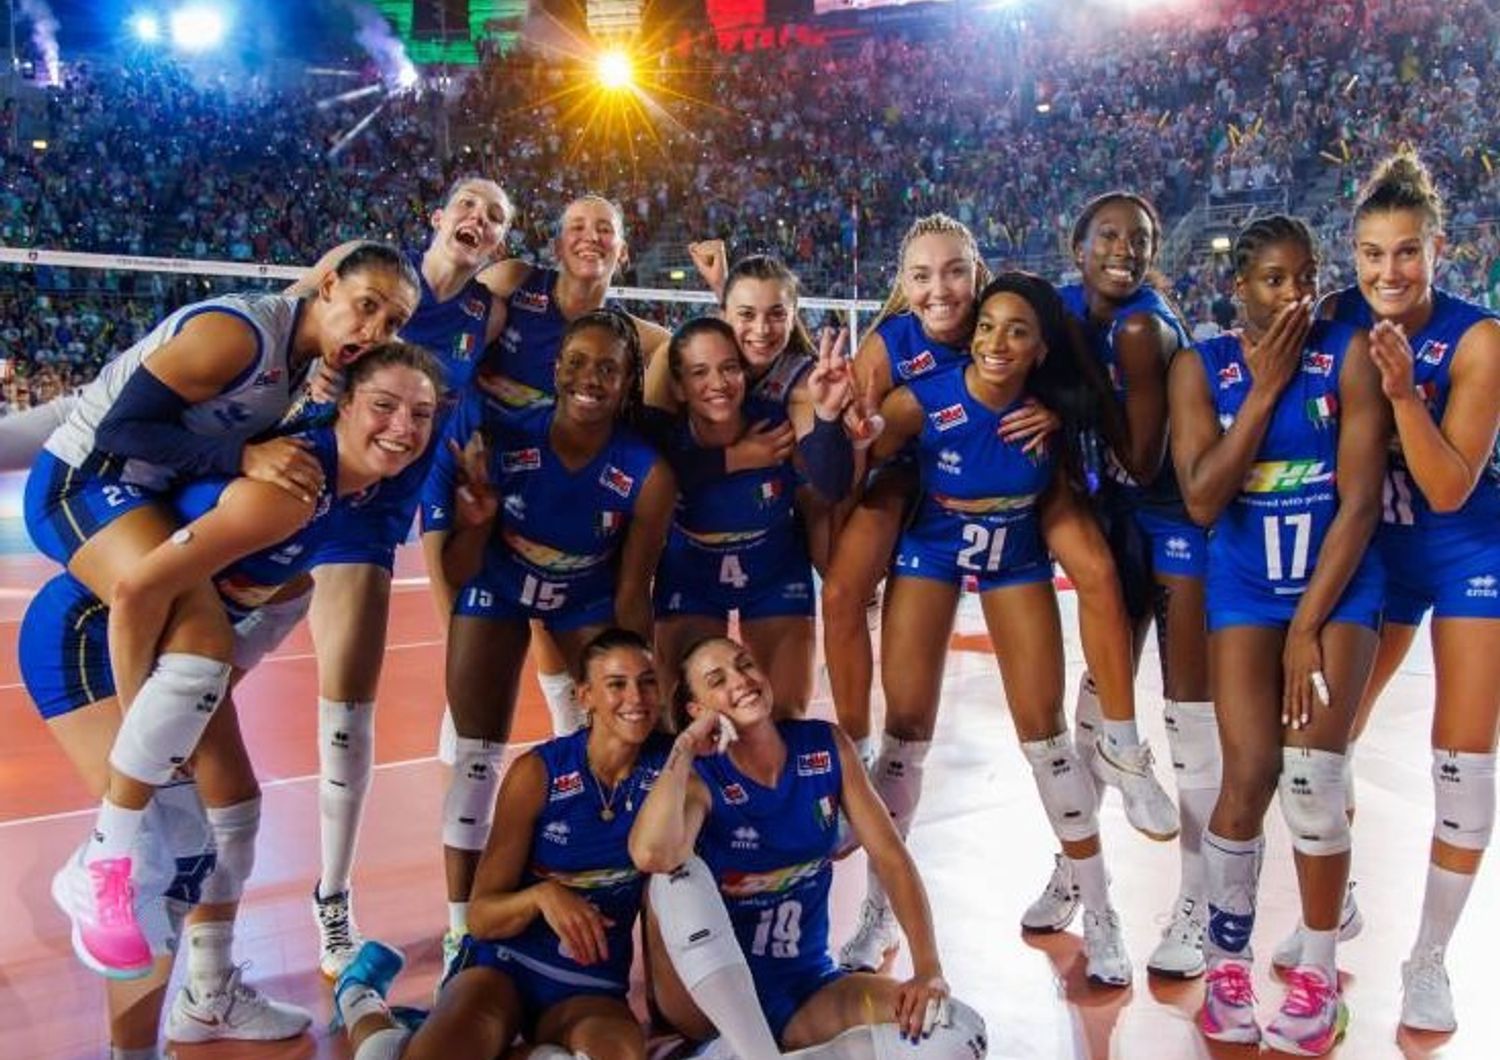 La Nazionale femminile di Volley dopo il trionfo all'Arena di Verona